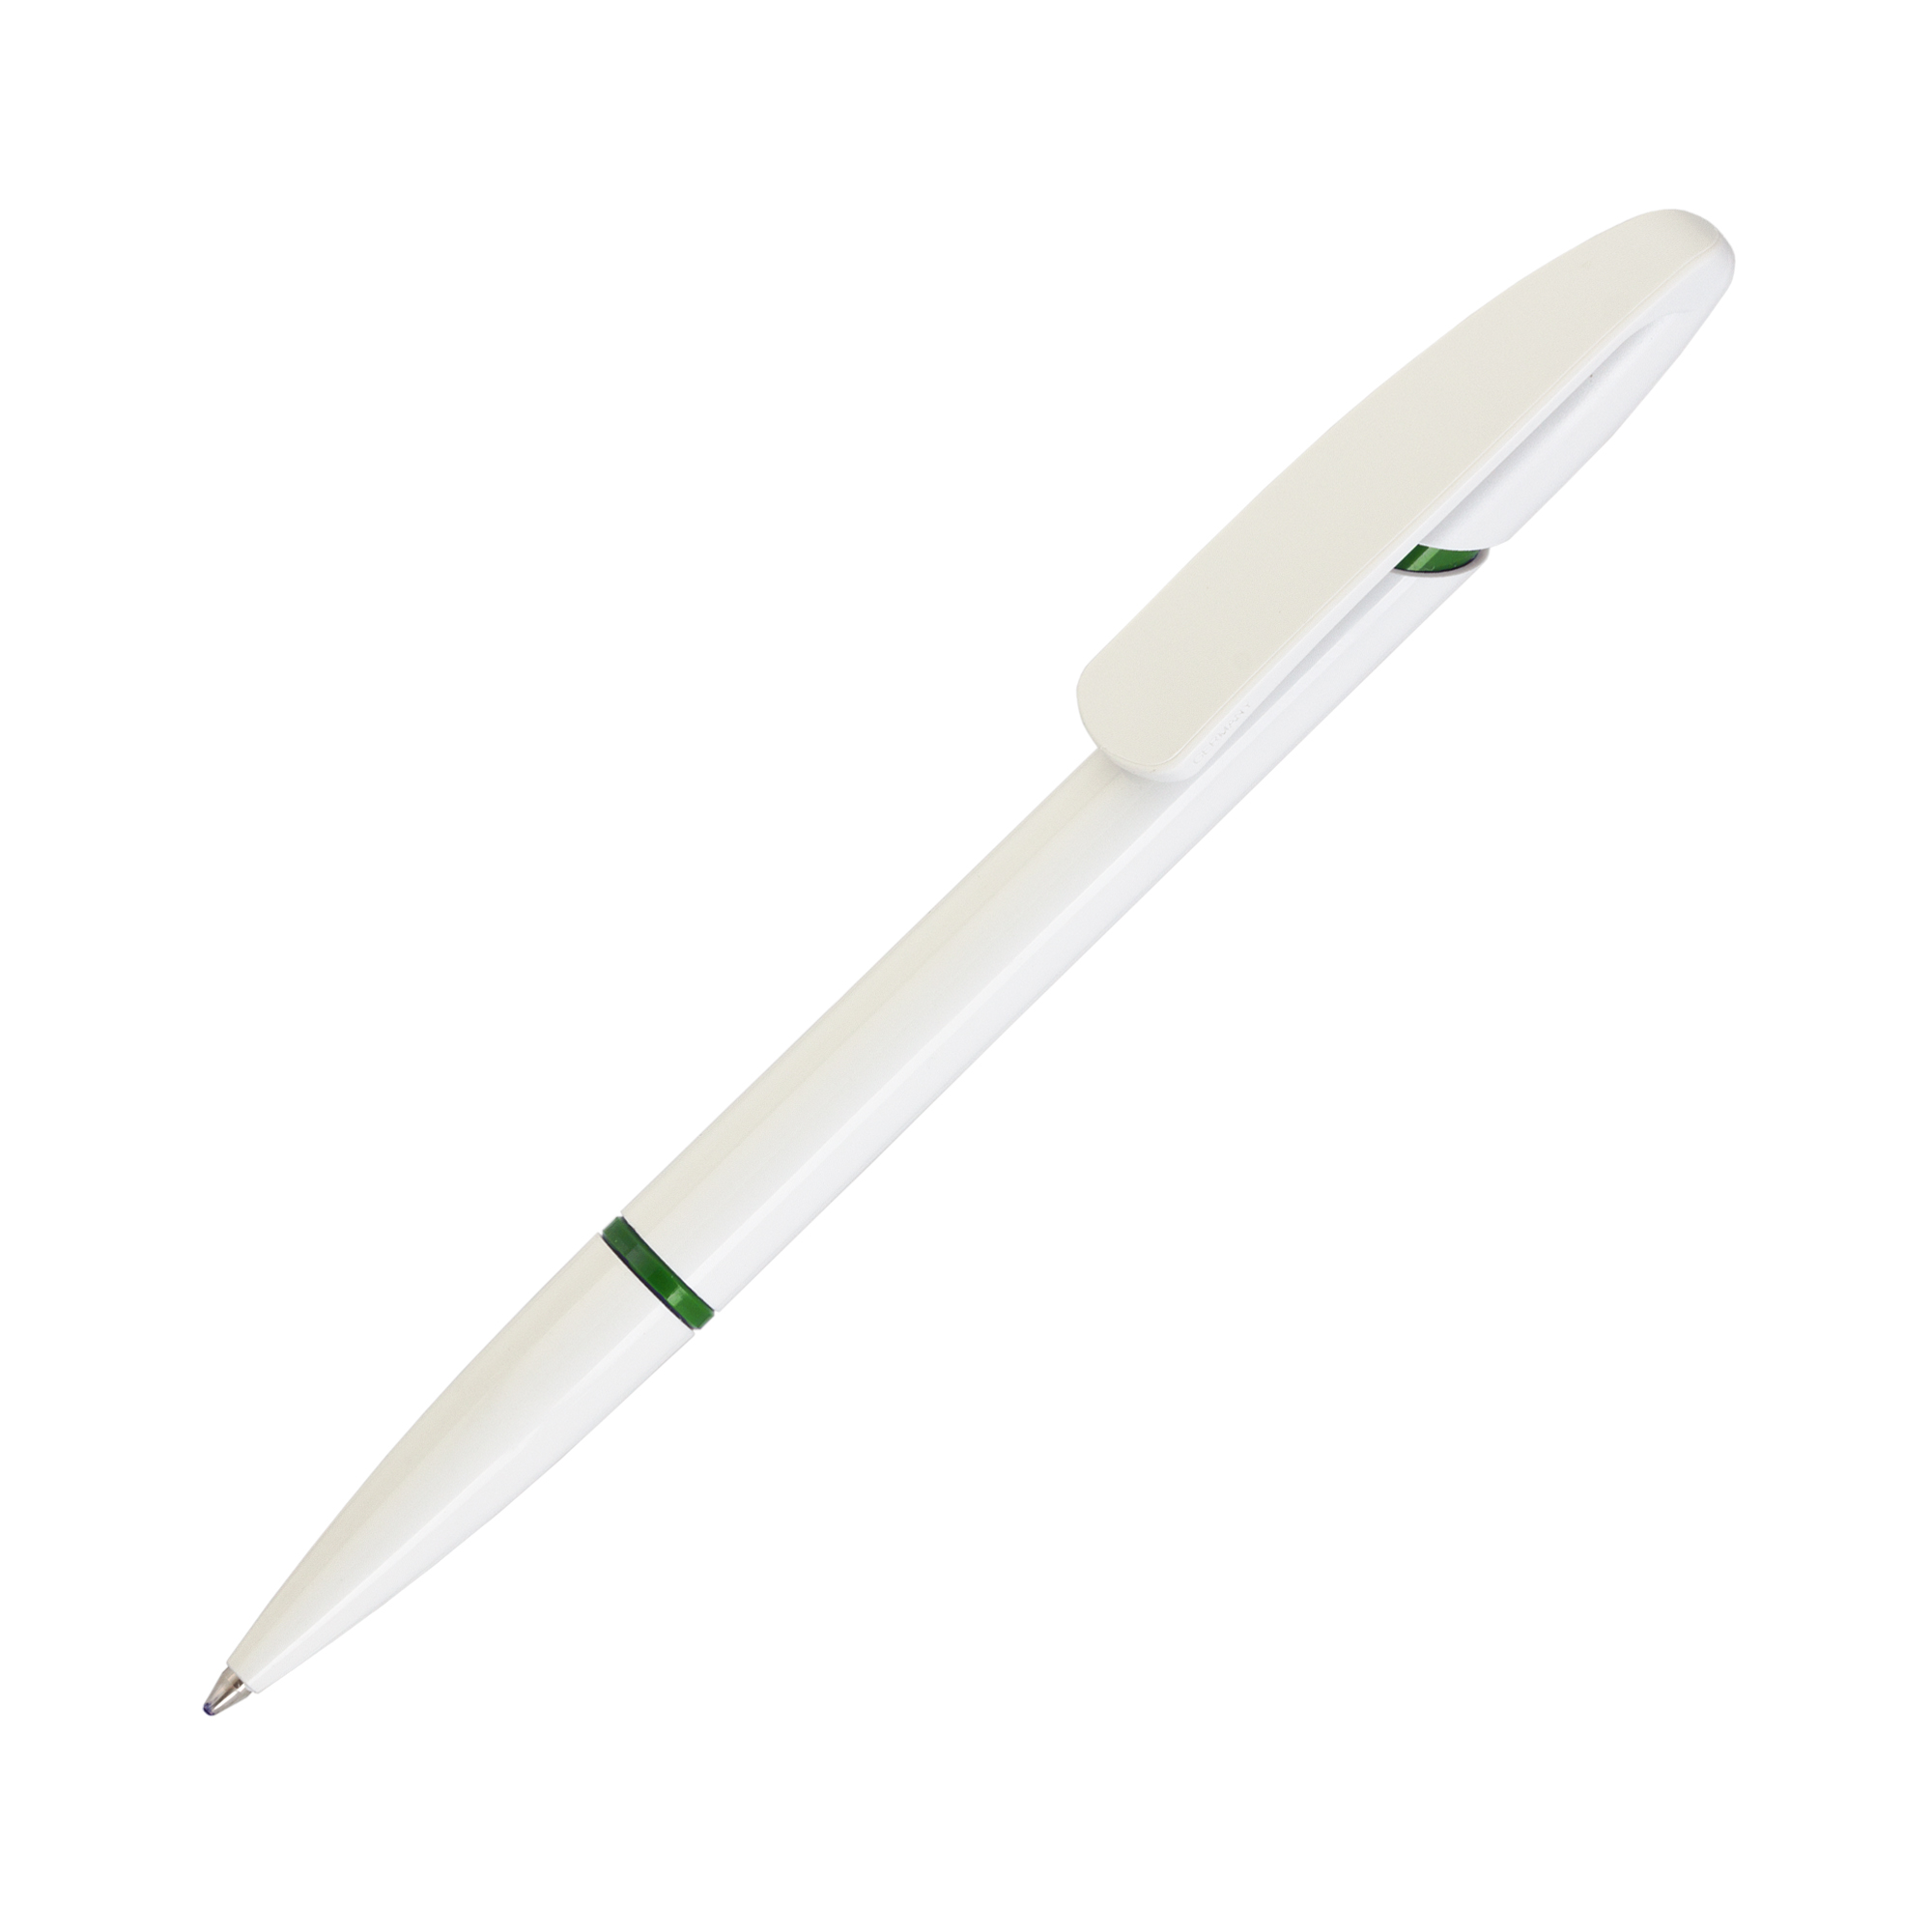 Ручка шариковая NOVA R, белый/темно-зеленый#